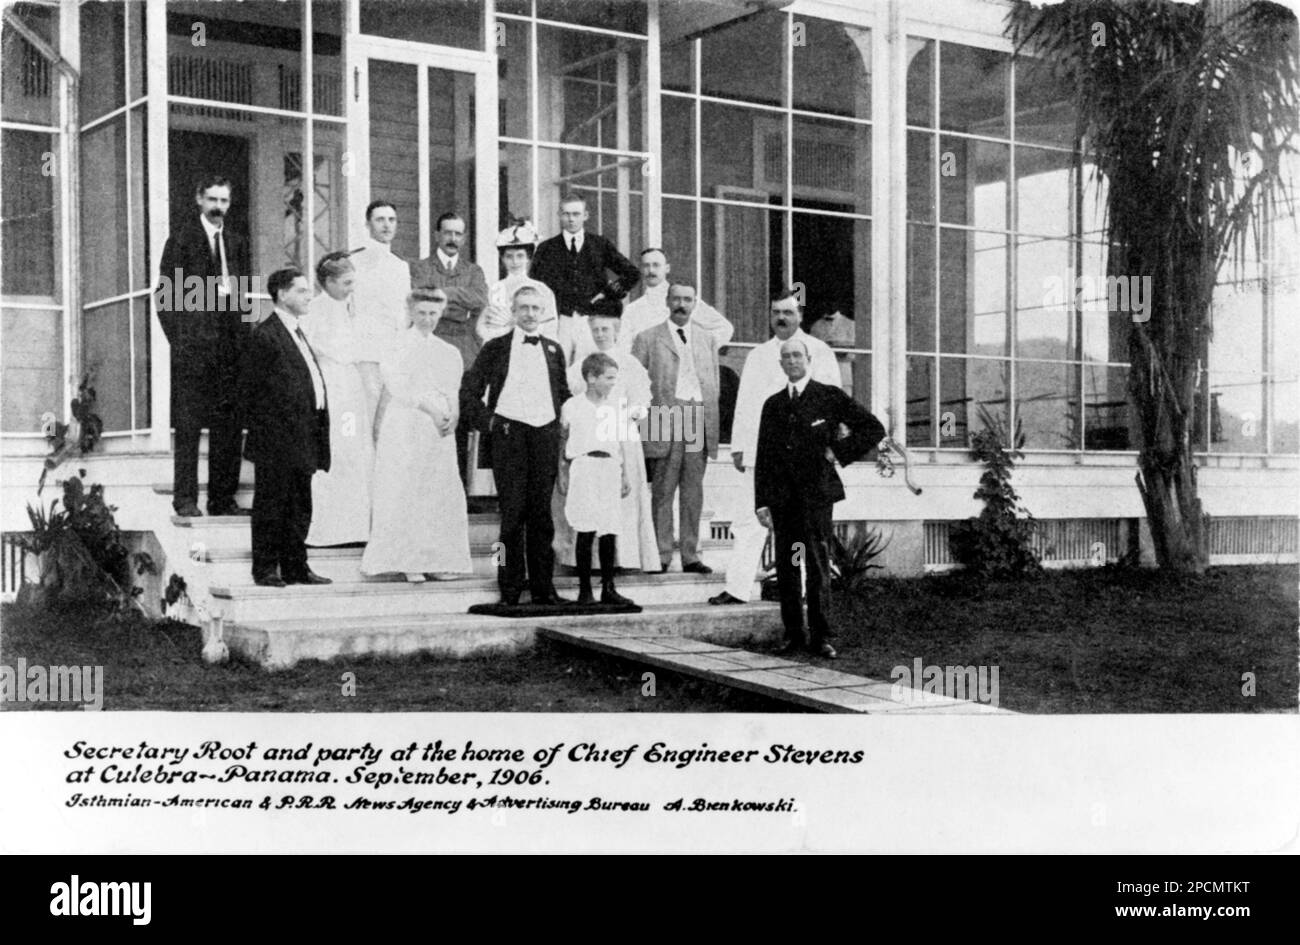 PANAMA , 1906 : Secretary Root and party at the home of Chief Engineer Stevens at Culebra , Panama , settembre 1906 - GEOGRAFIA - FOTO STORICHE - STORIA - STORICO - CANALE DI PANAMA - CENTRO AMERICA - CANALE DI PANAMA --- Archivio GBB Foto Stock